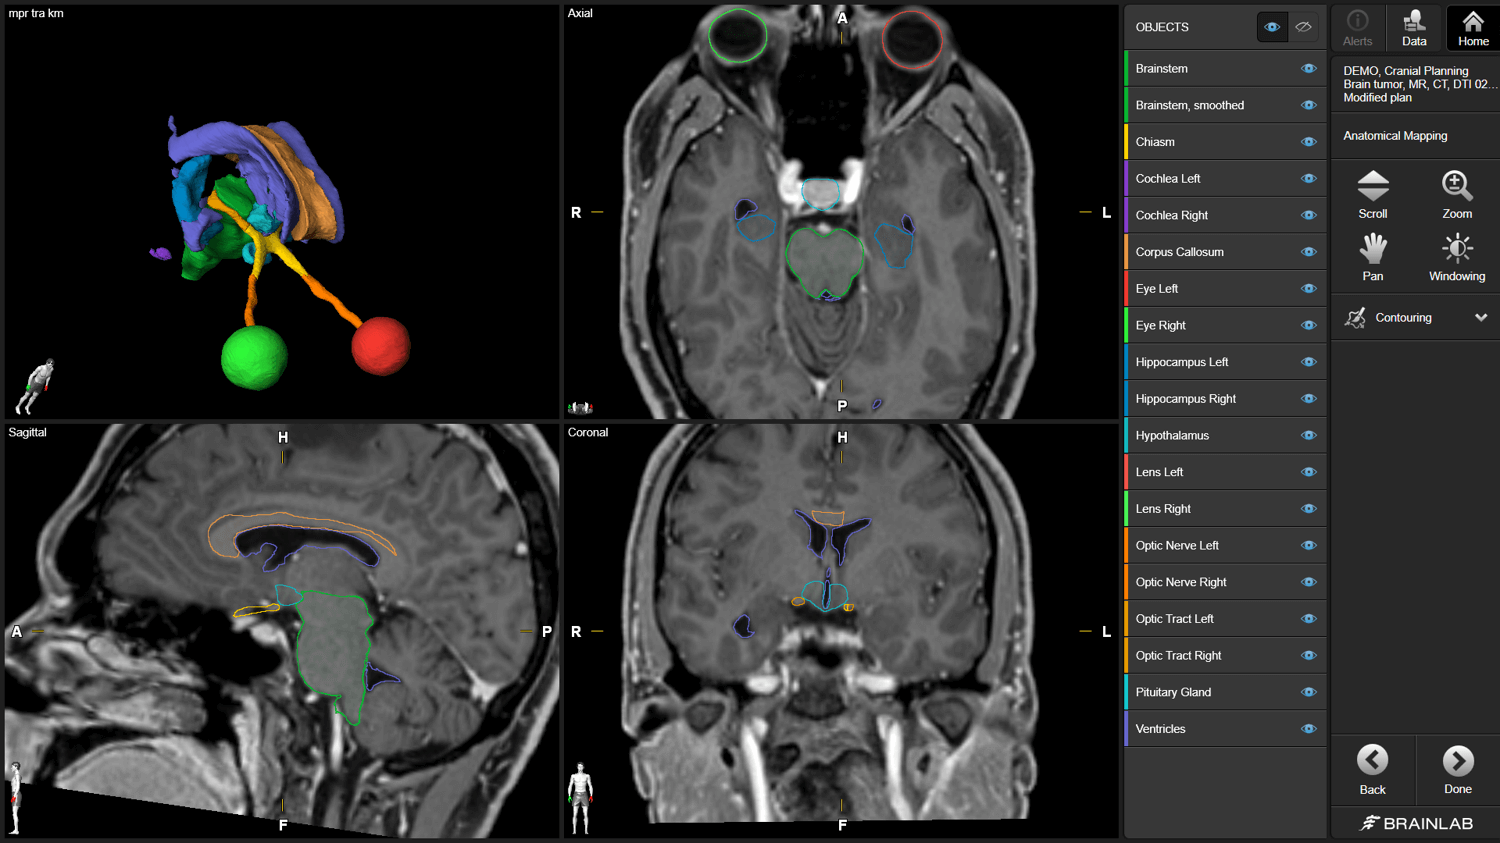 Captura de pantalla del software Anatomical Mapping utilizado para segmentar estructuras distintas del cerebro para la planificación del tratamiento de radioterapia.